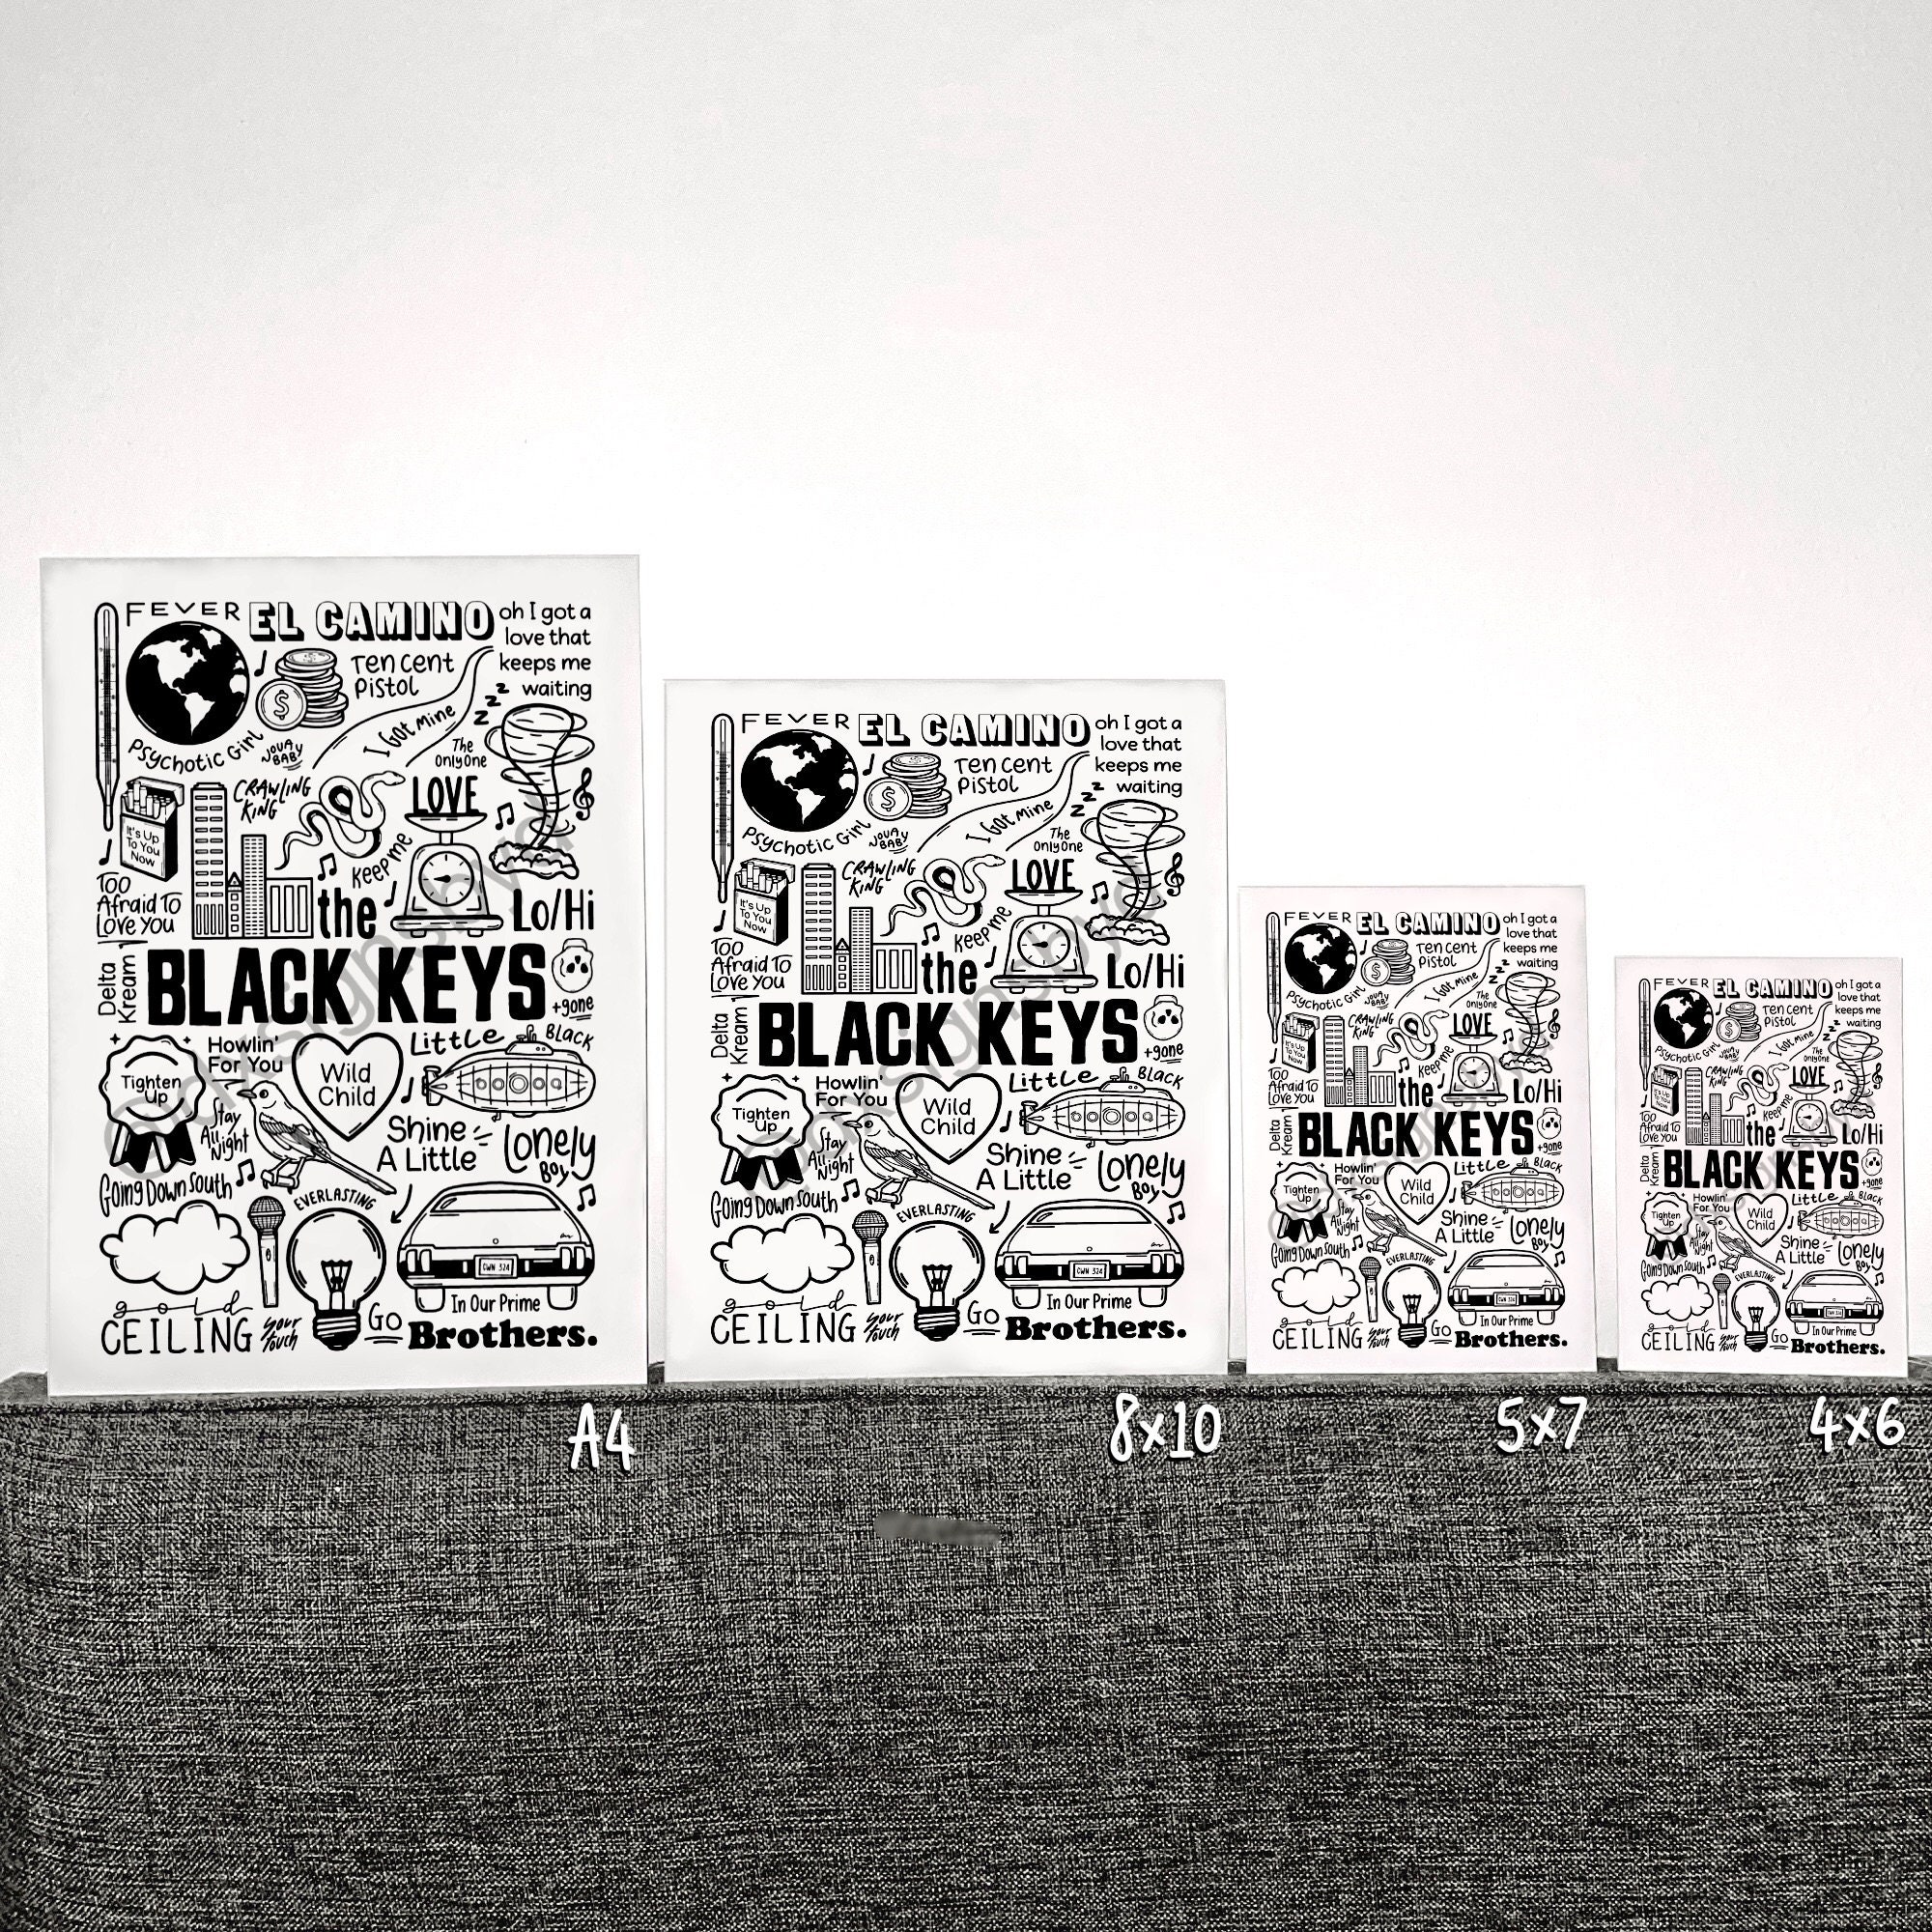 The Black Keys poster